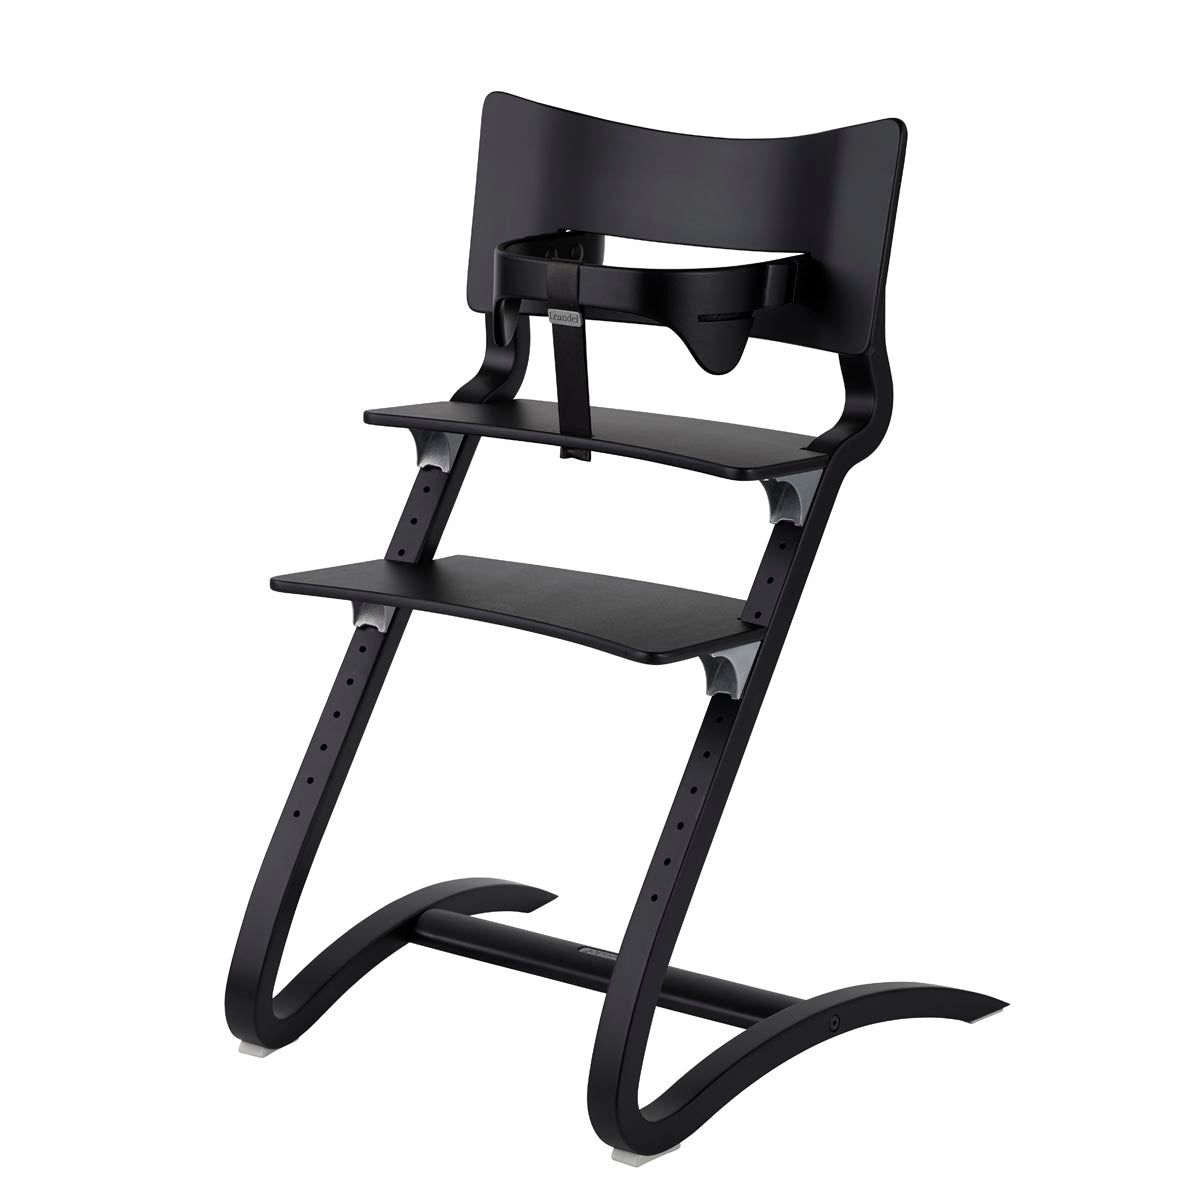 Leander Classic High Chair - Black